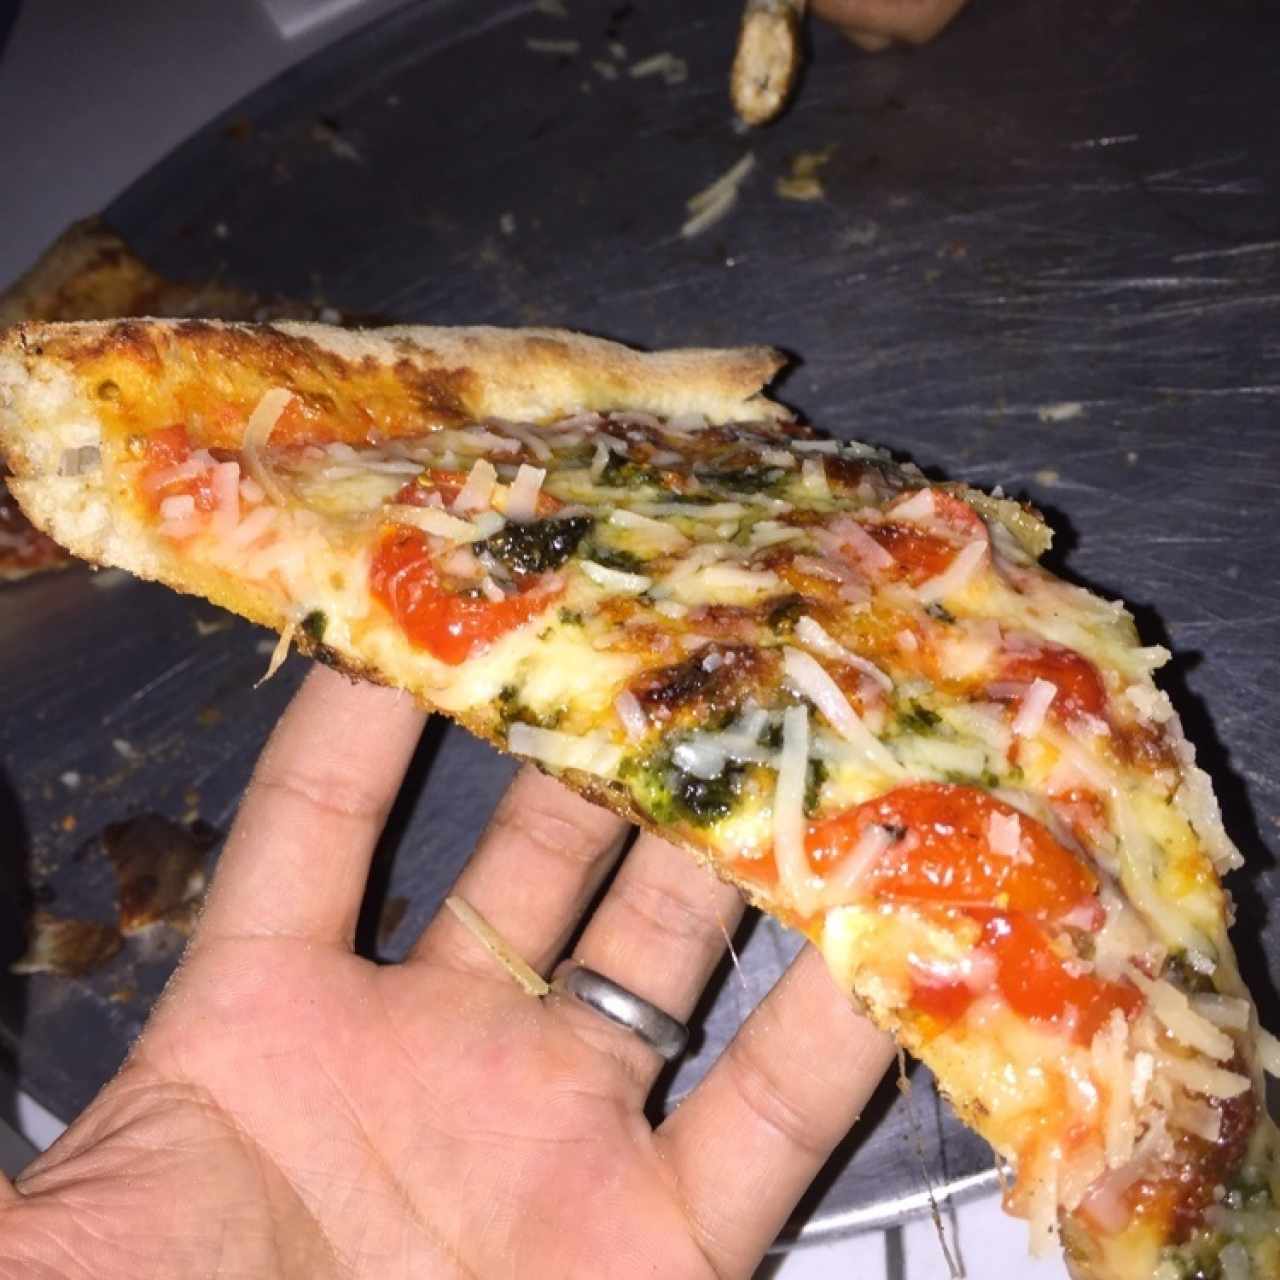 Pizza Pesto